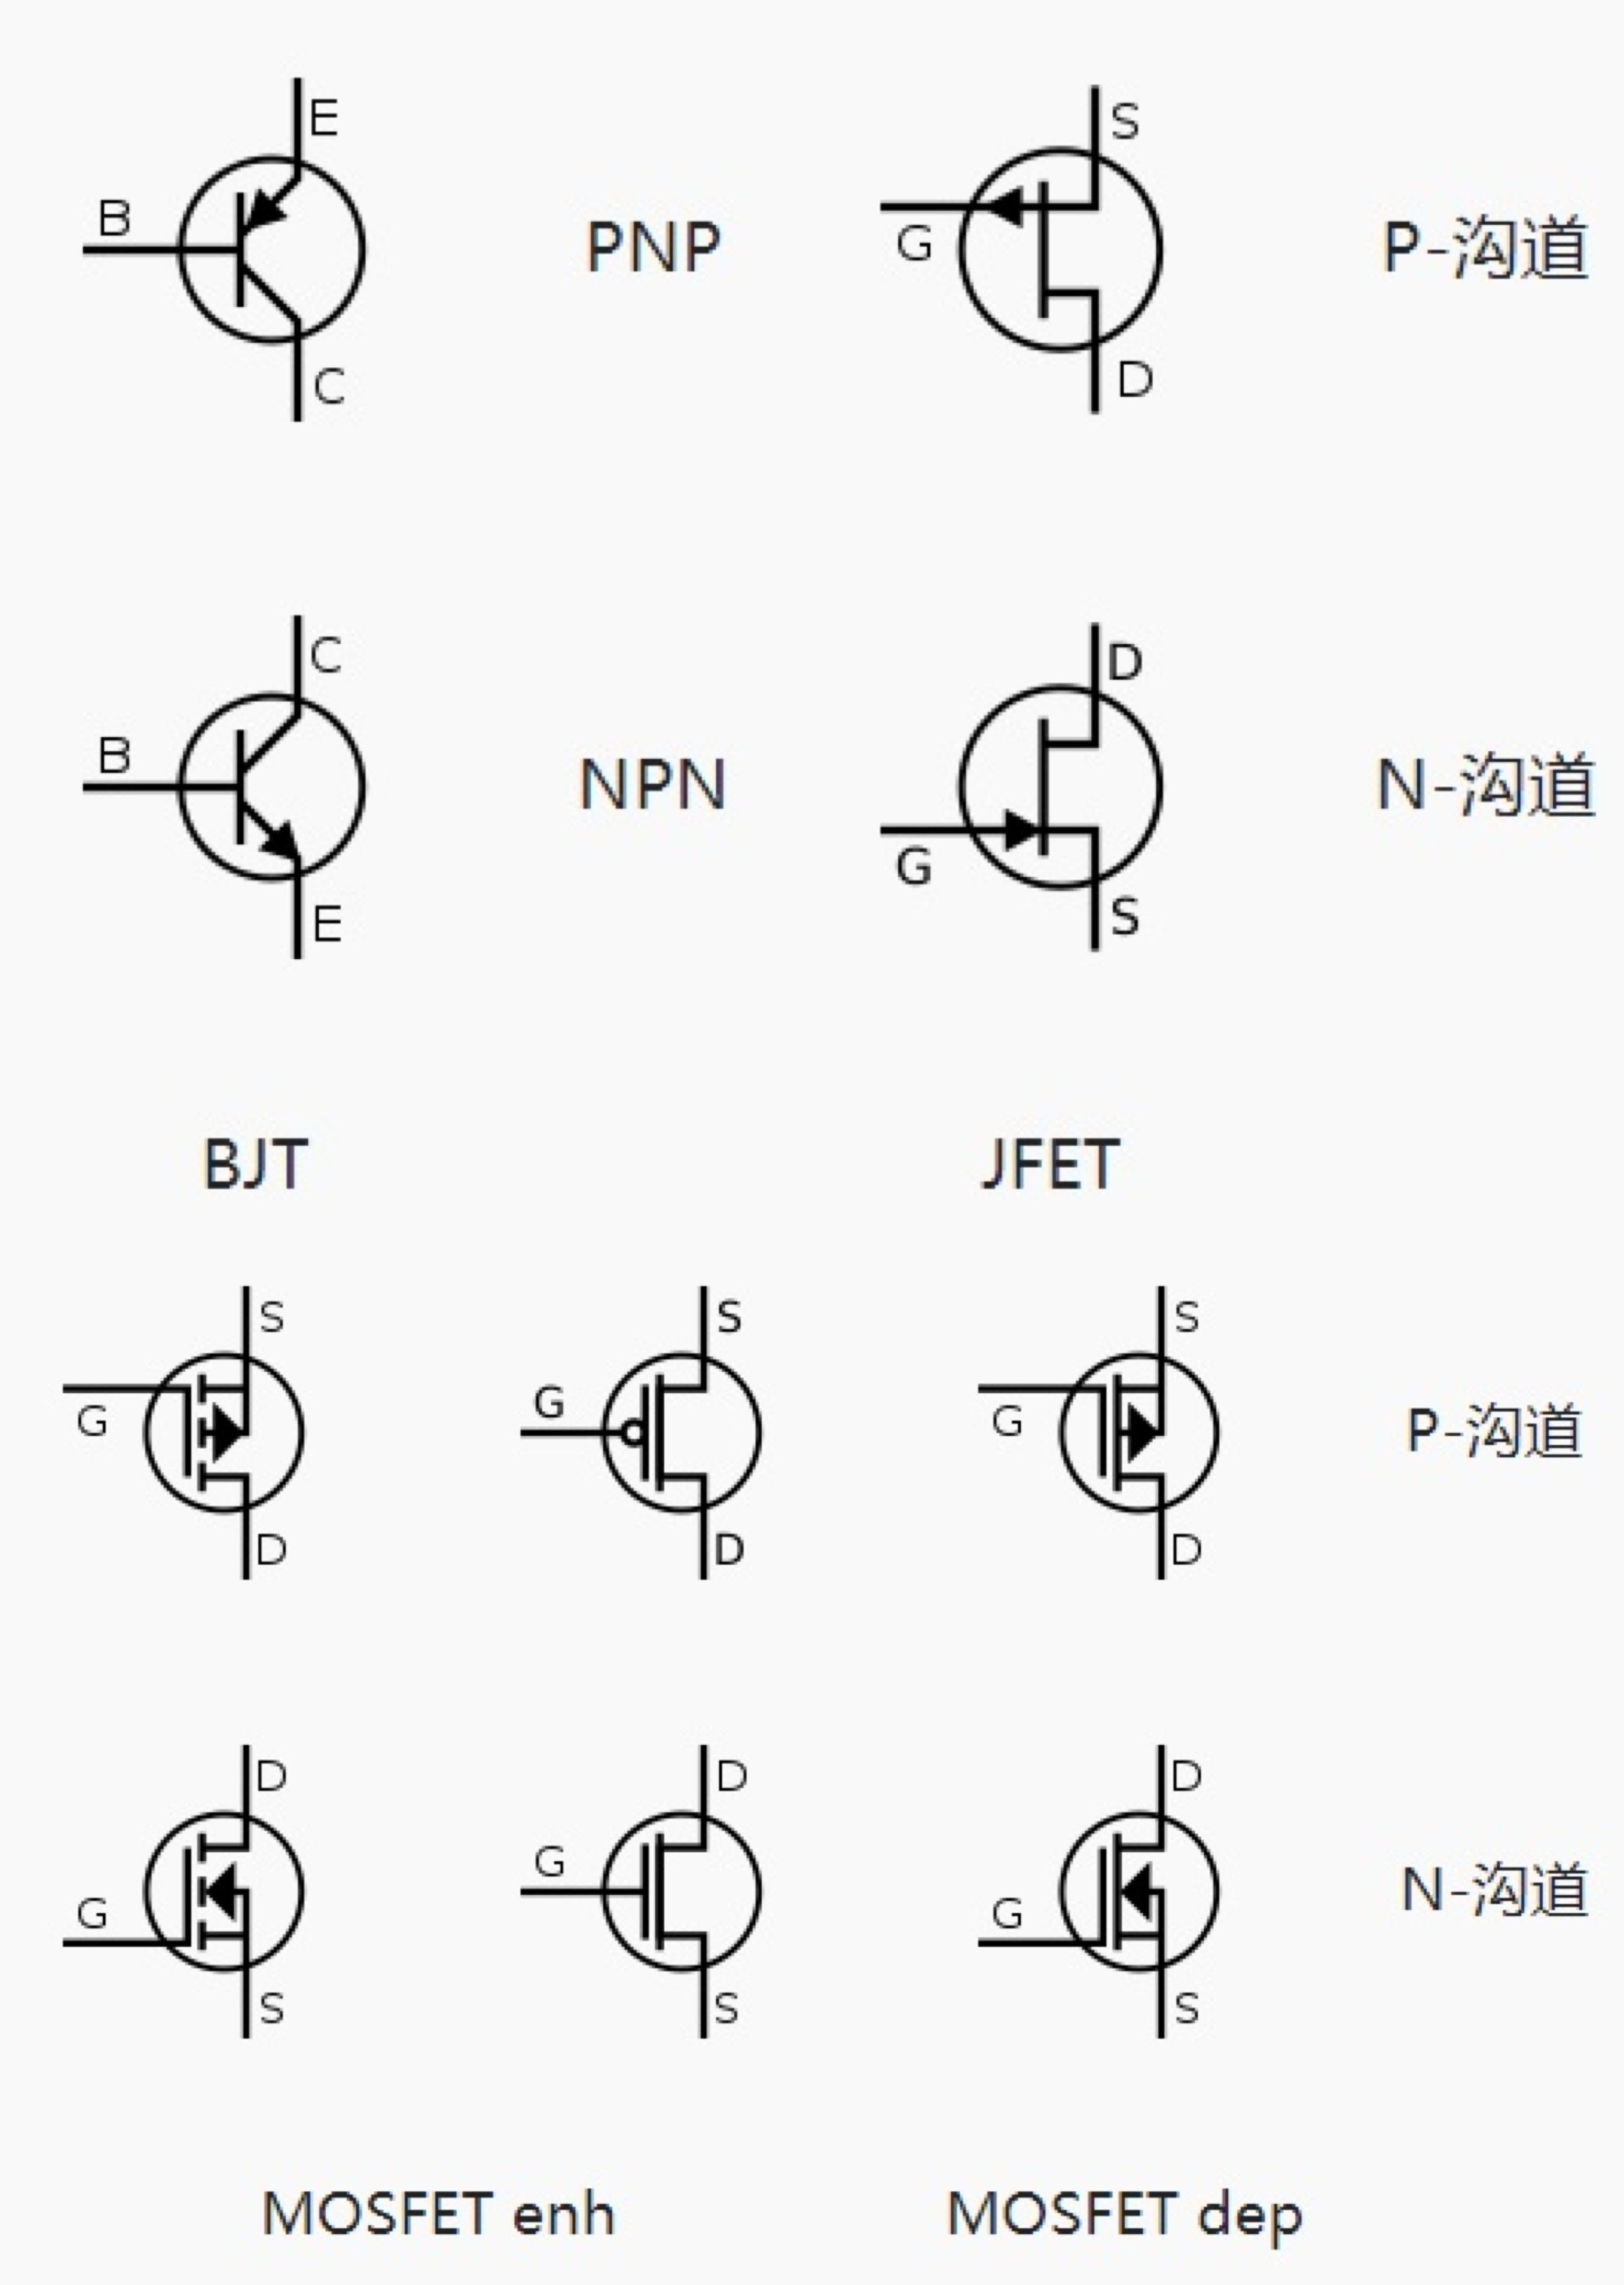 transistor_symbol